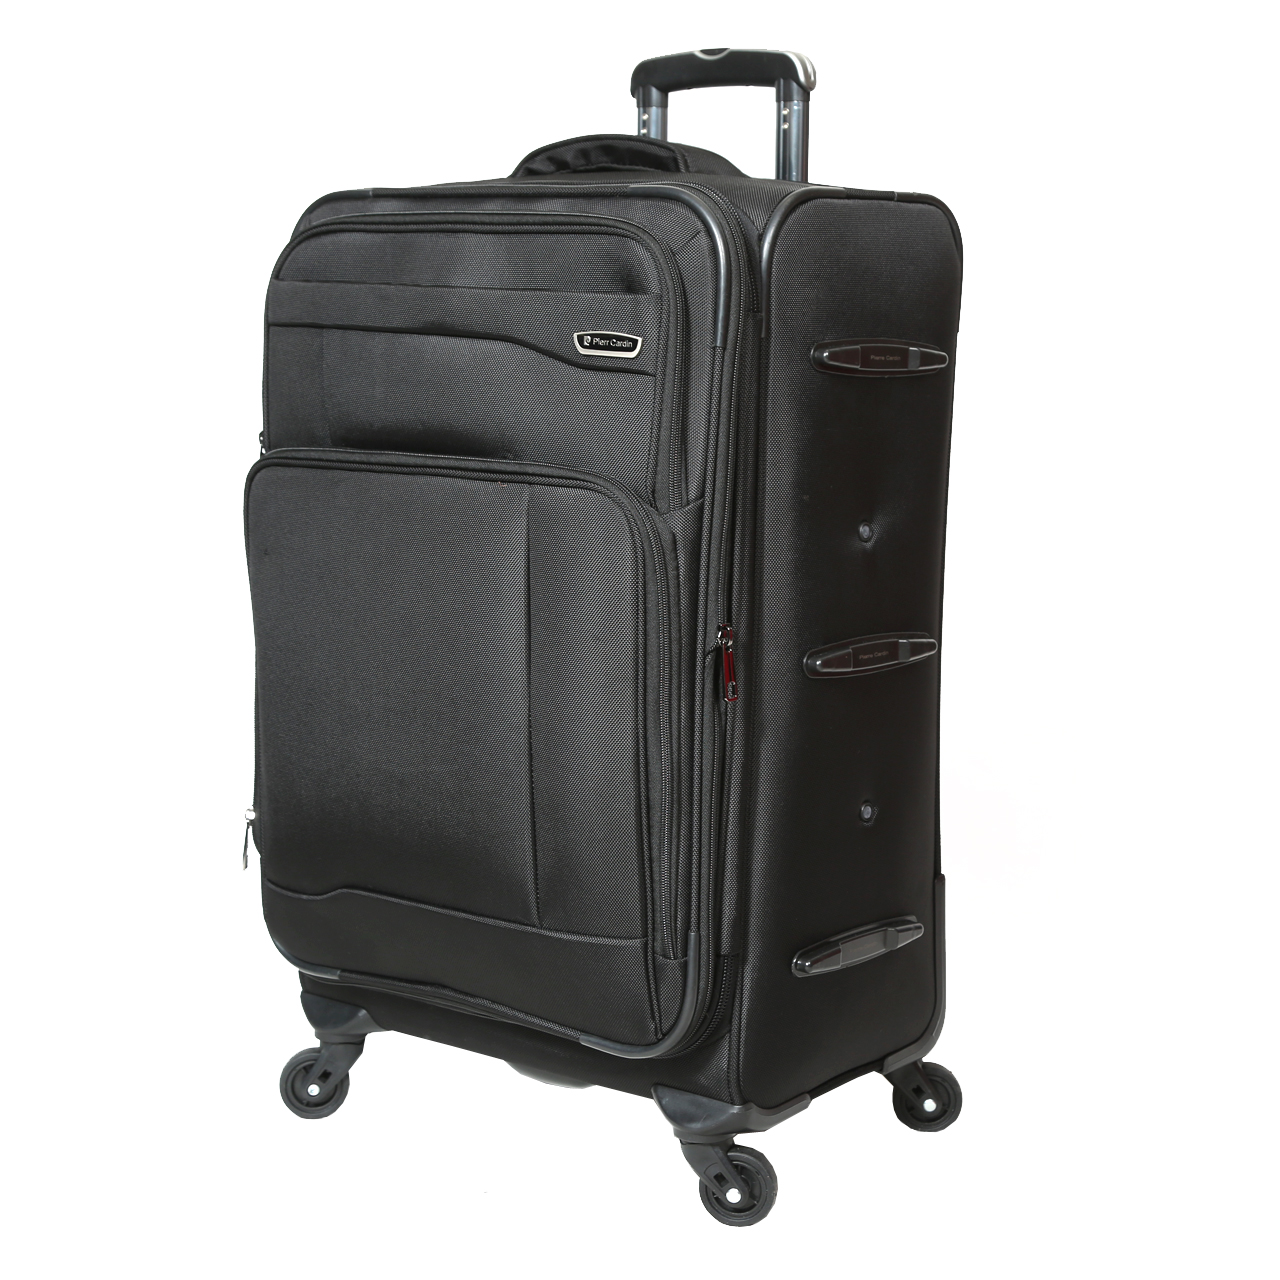  چمدان پیر کاردین مدل SBP1600 سایز متوسط  -  - 19